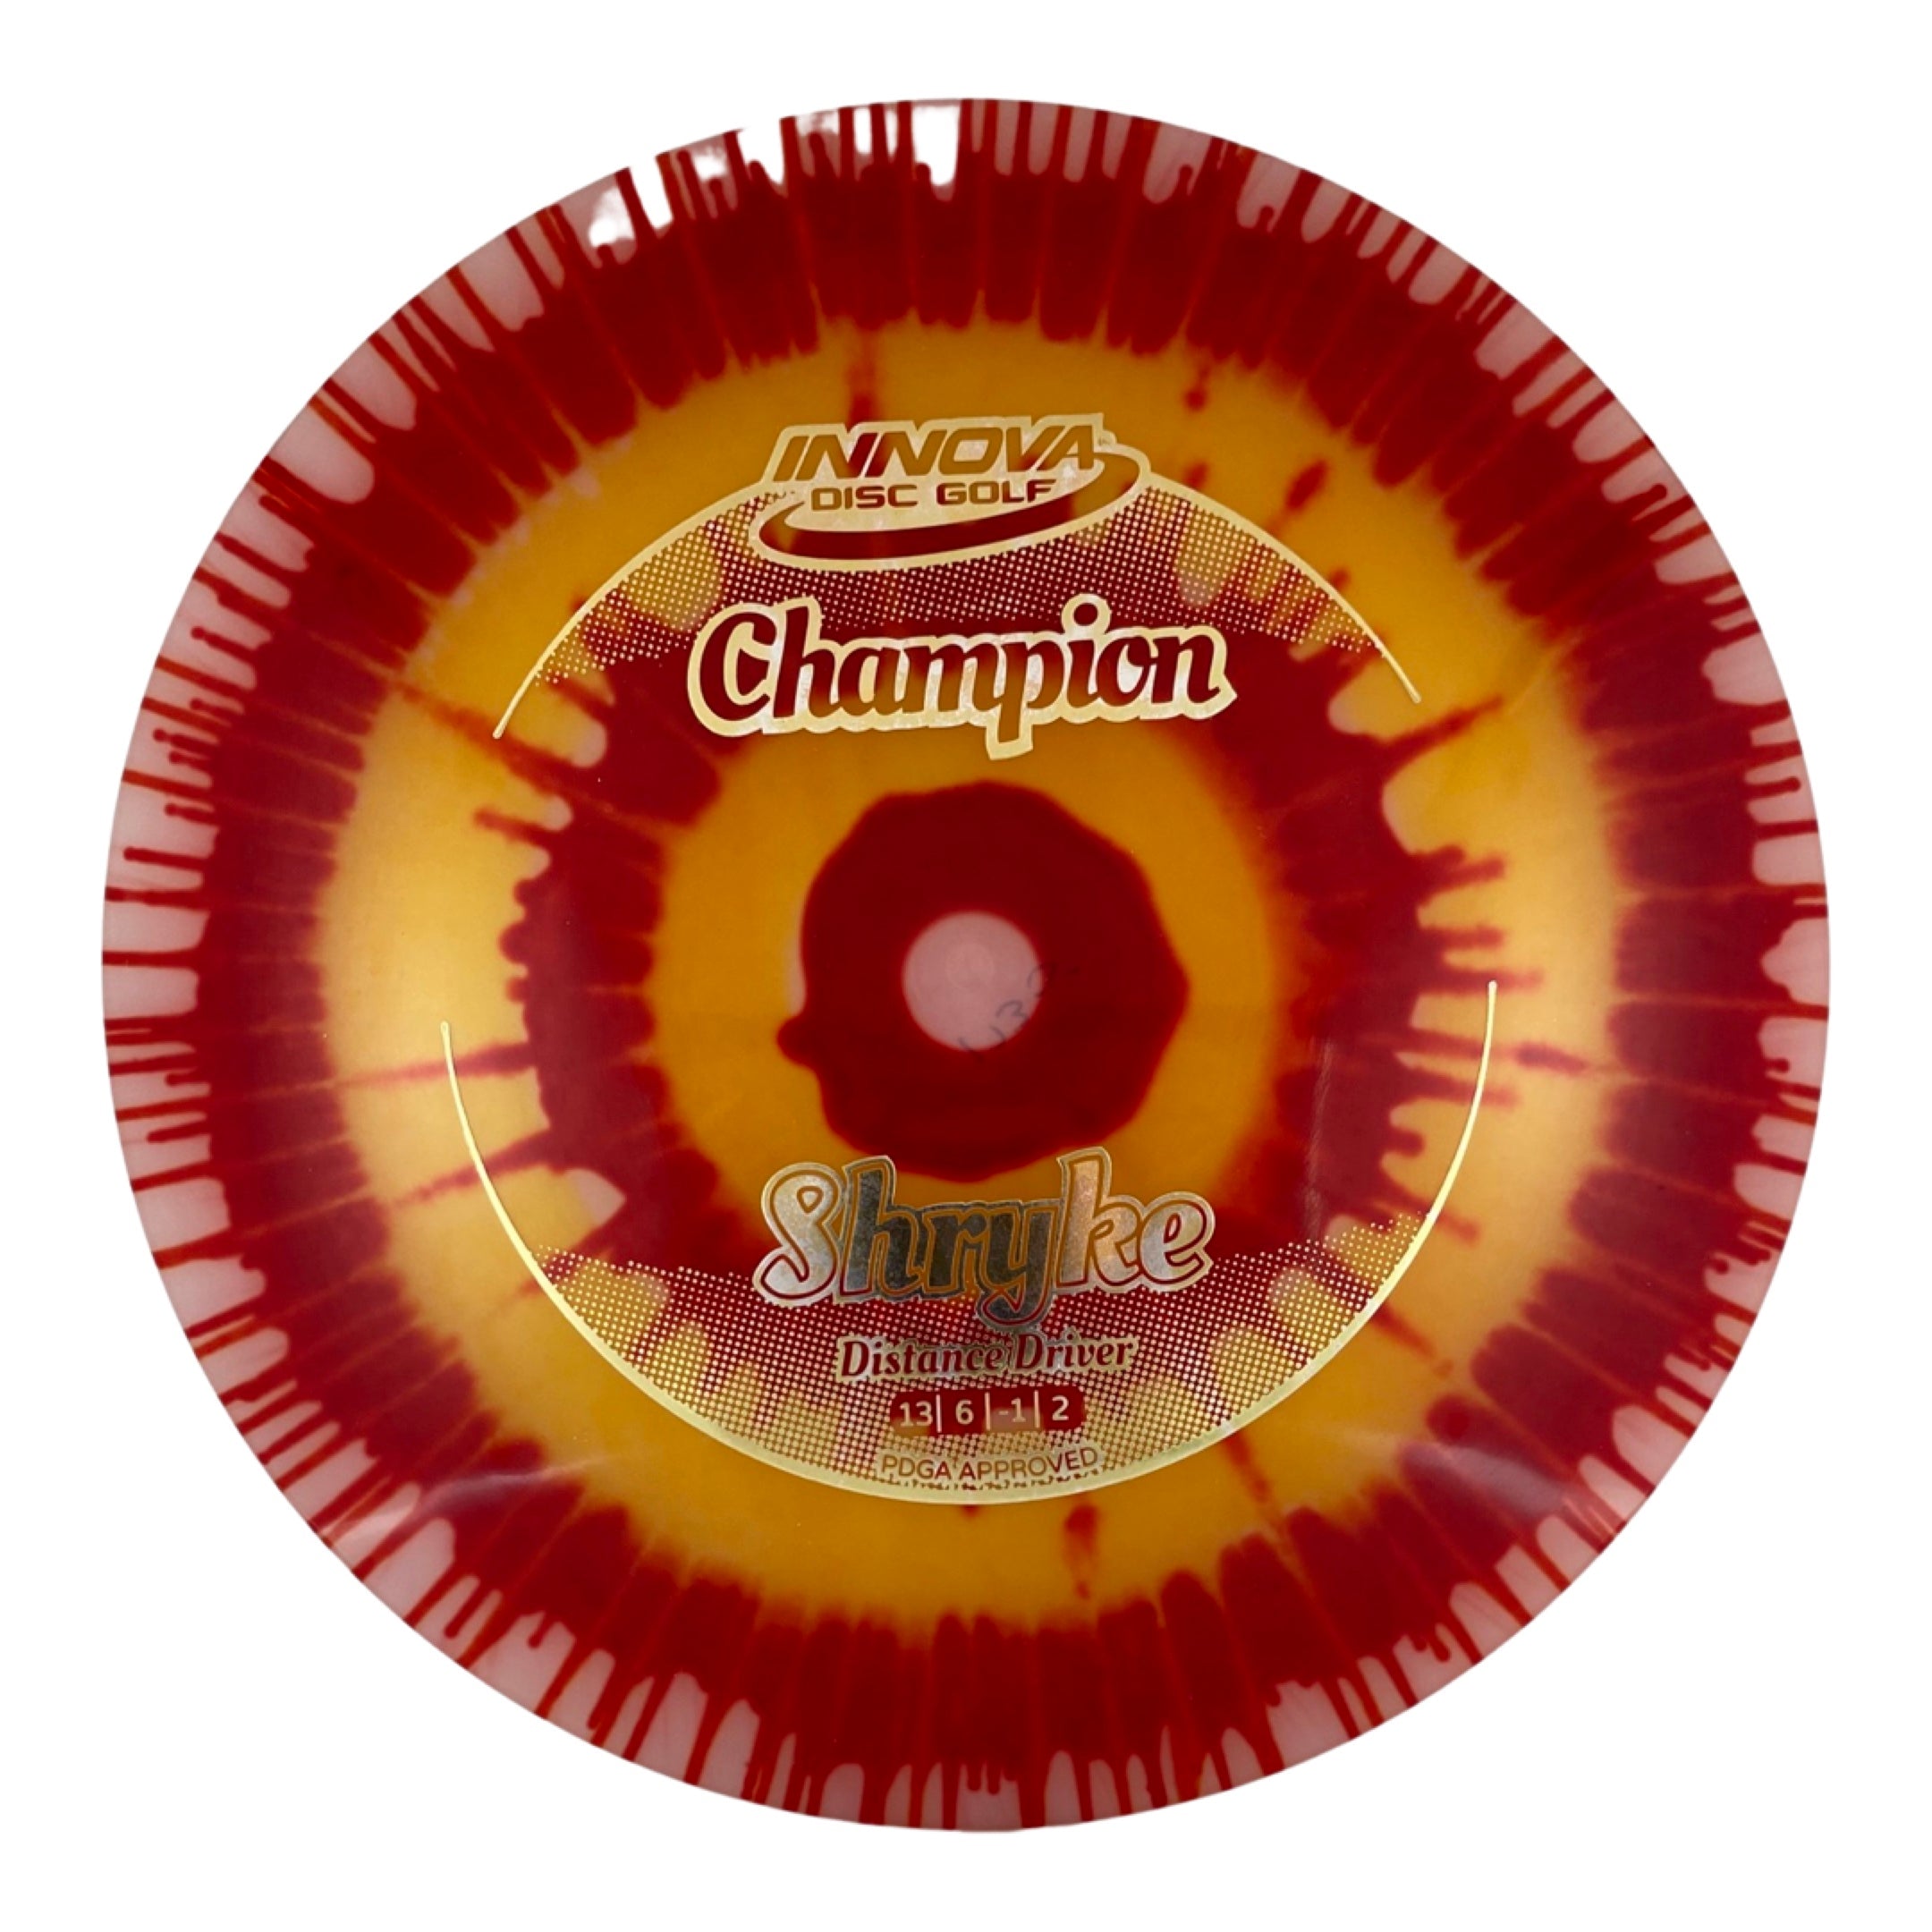 Innova Shryke - Champion I-Dye